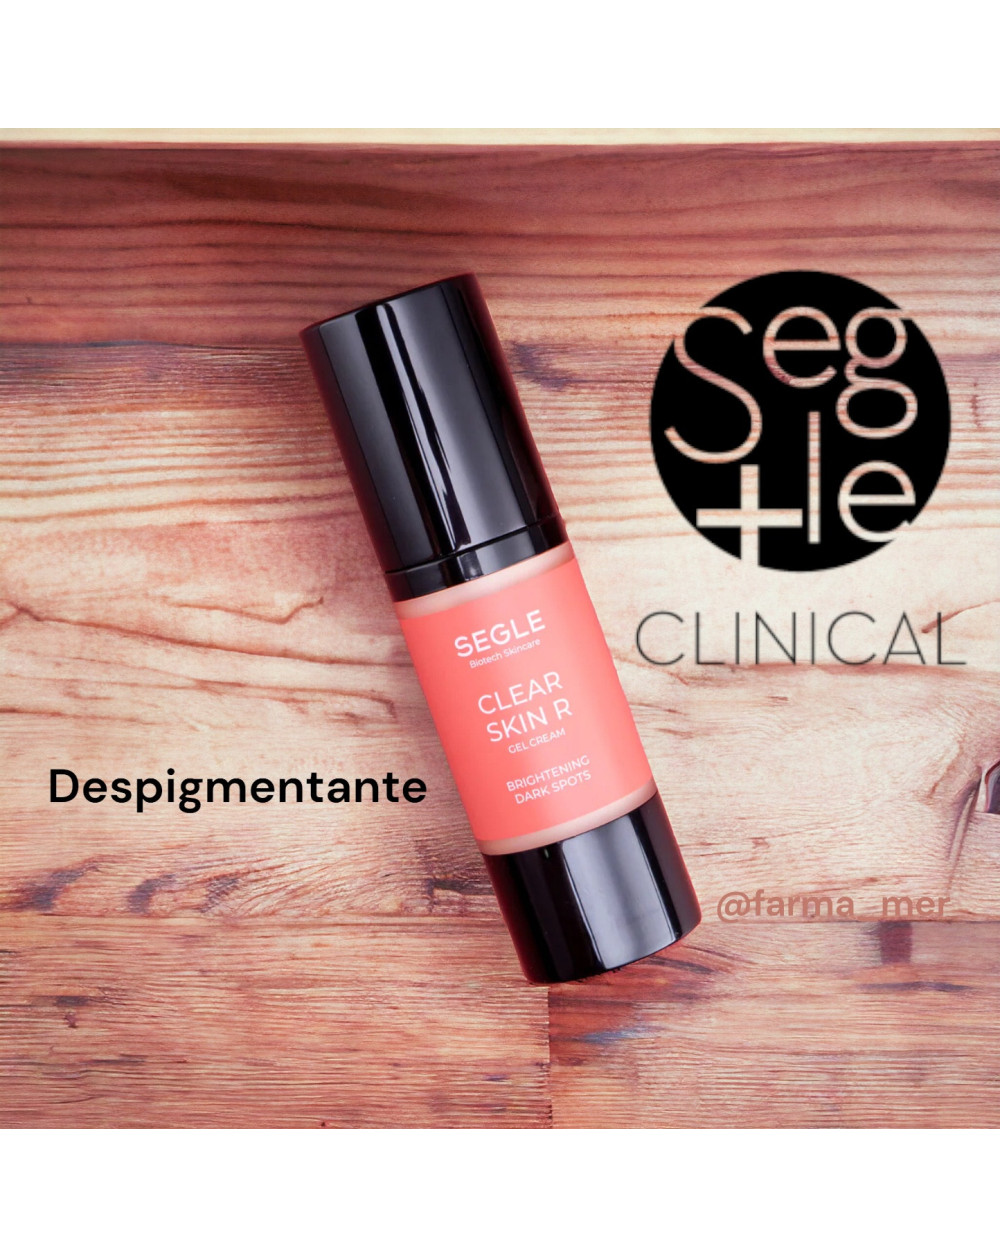 Segle Clinical Clear skin R Crema  gel Despigmentante Noche 30ml